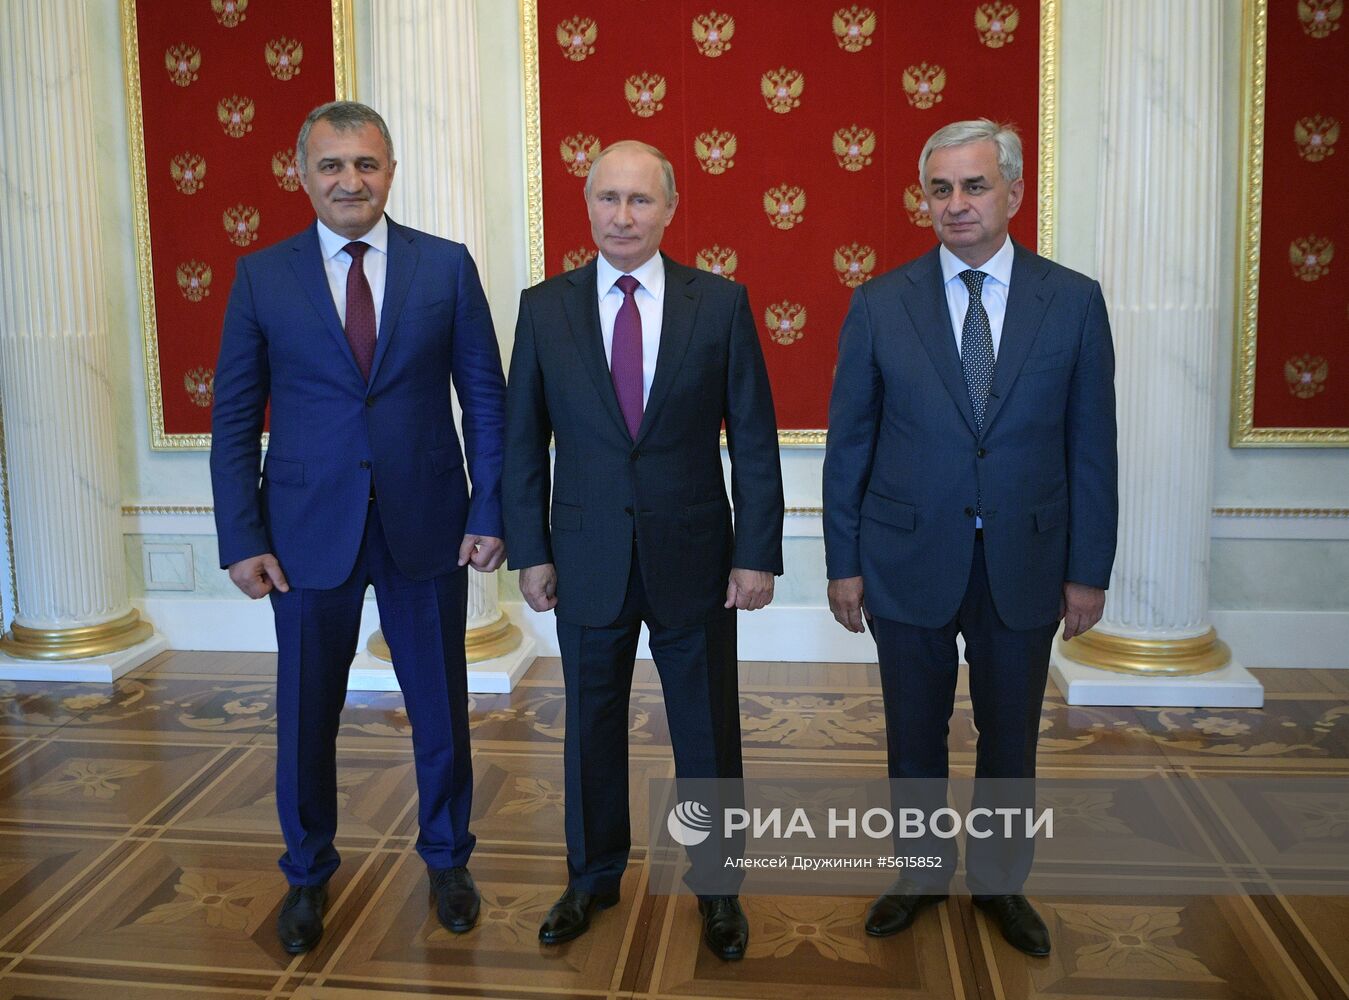 Президент РФ В. Путин встретился с президентом Республики Абхазия Р. Хаджимбой и президентом Республики Южная Осетия А. Бибиловым